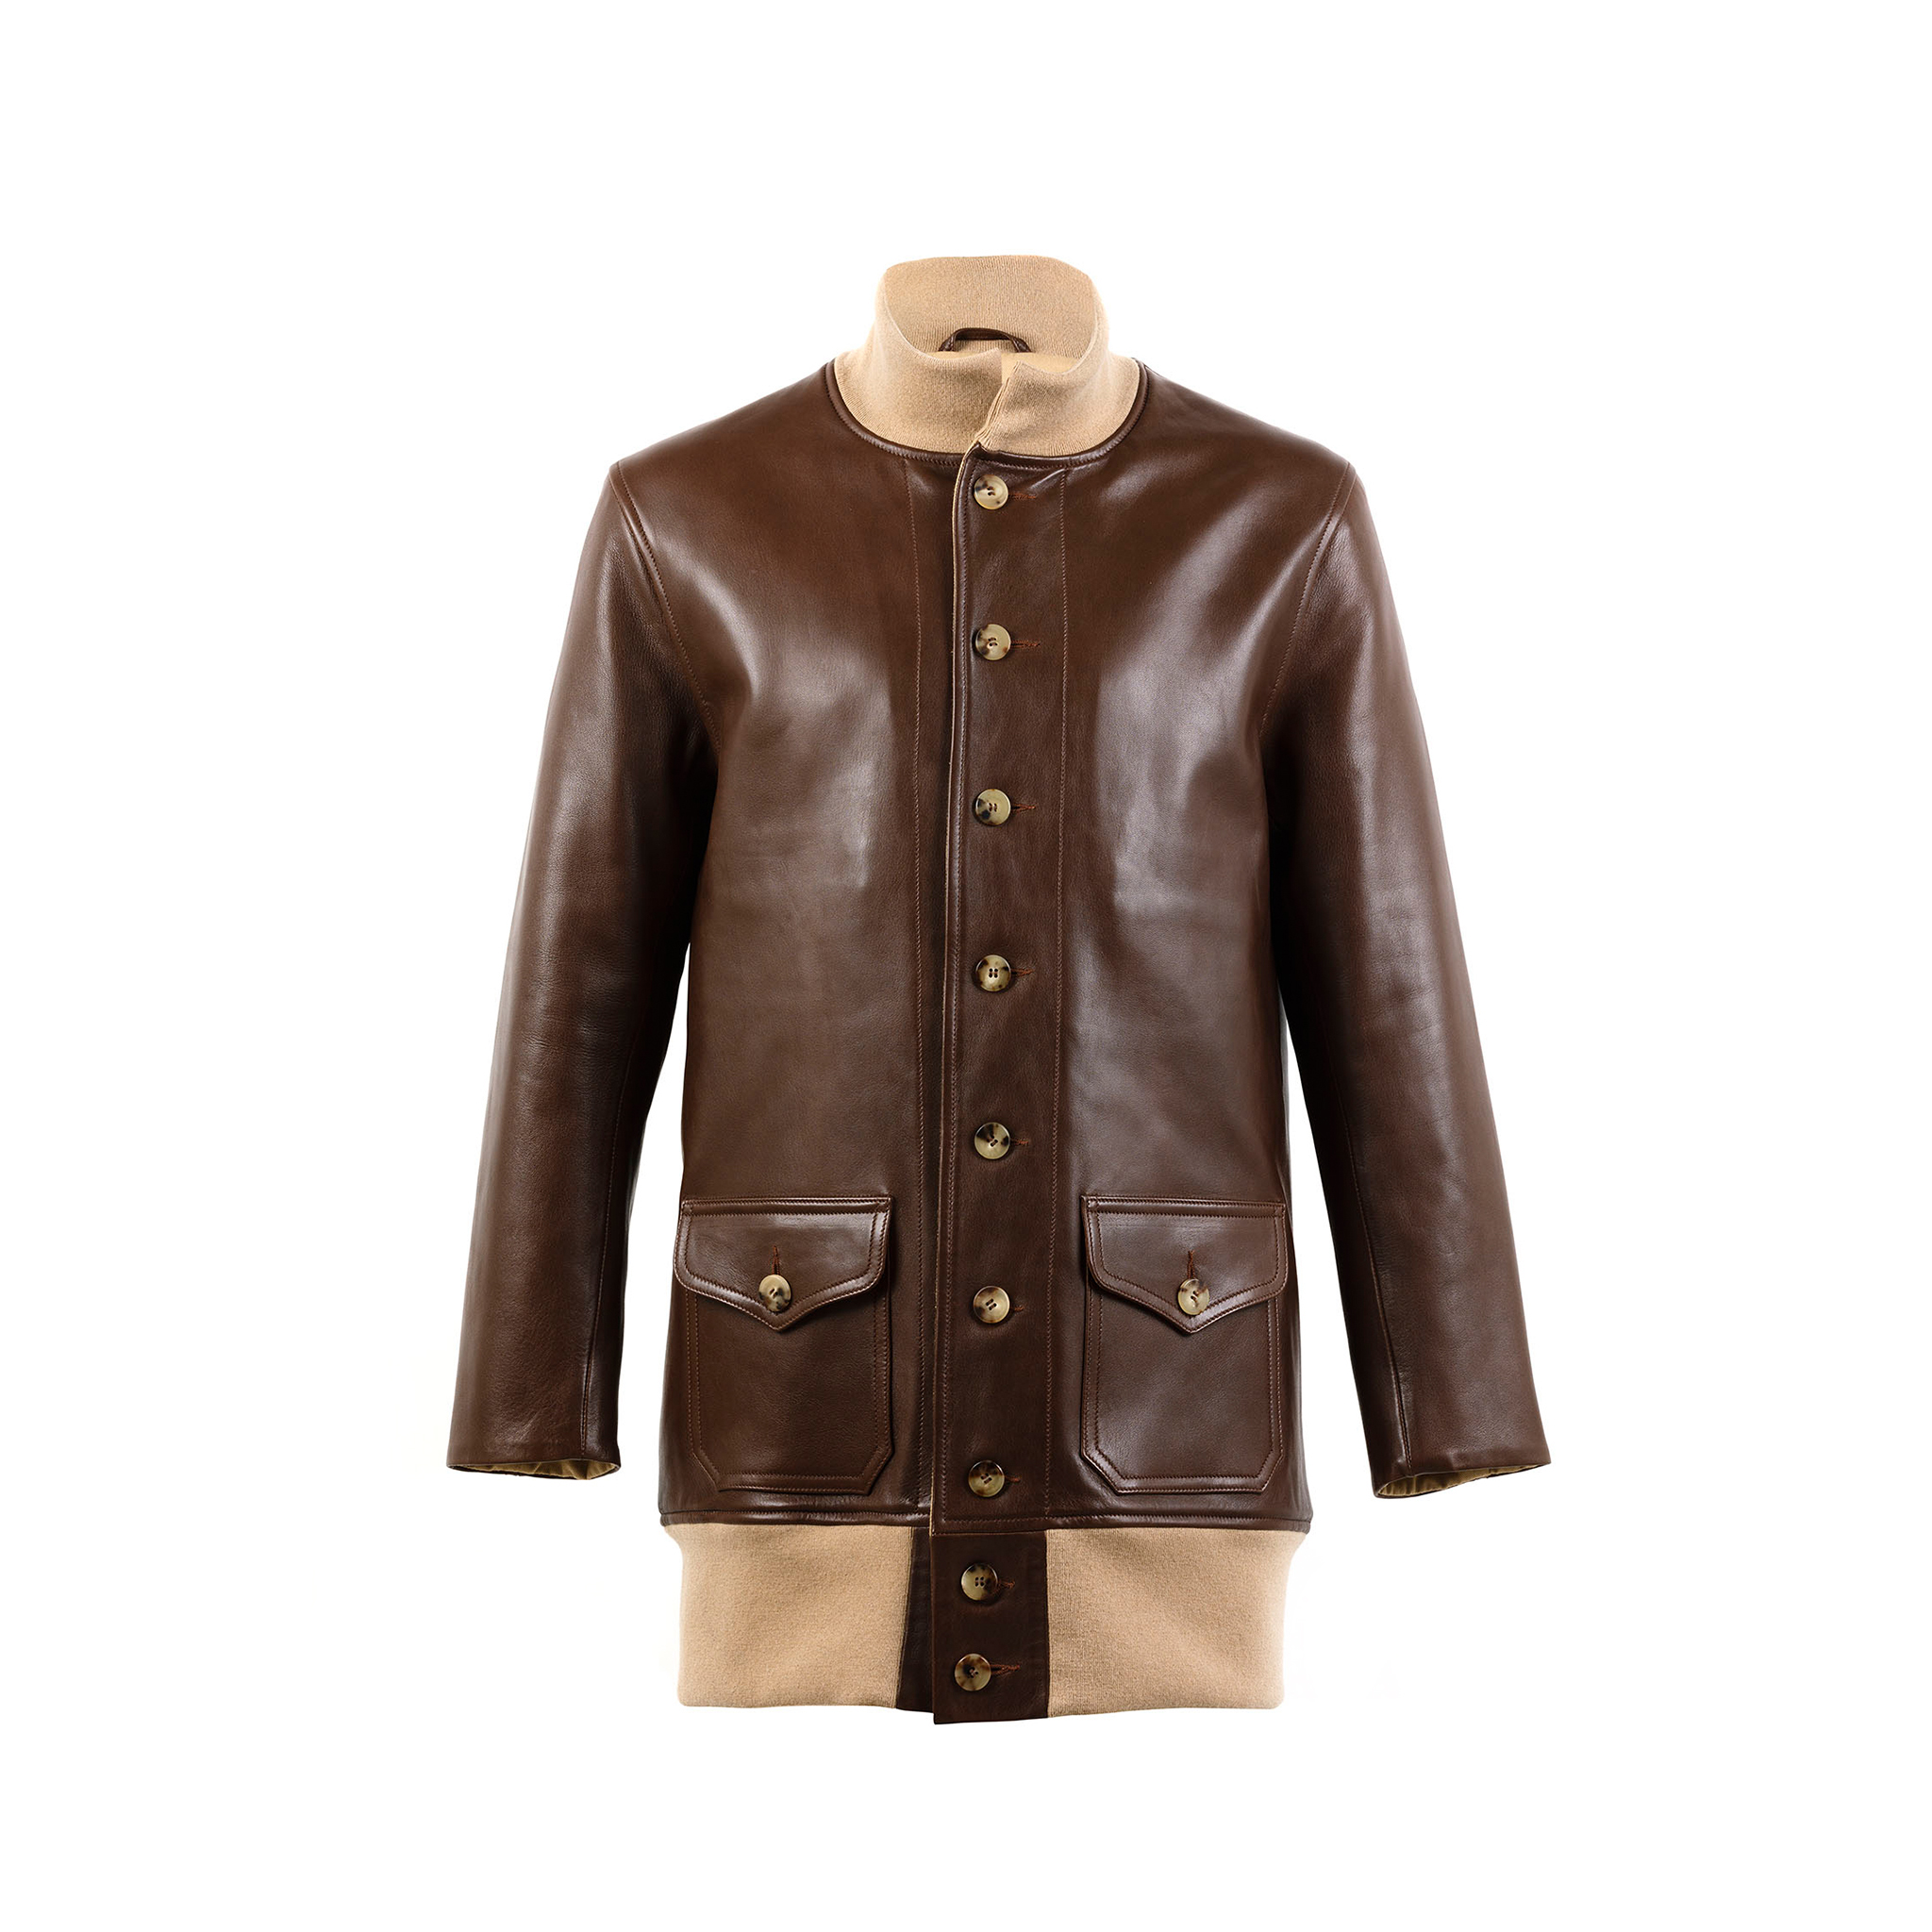 Manteau A1 3/4 - Vintage - Cuir glacé - Couleur brun